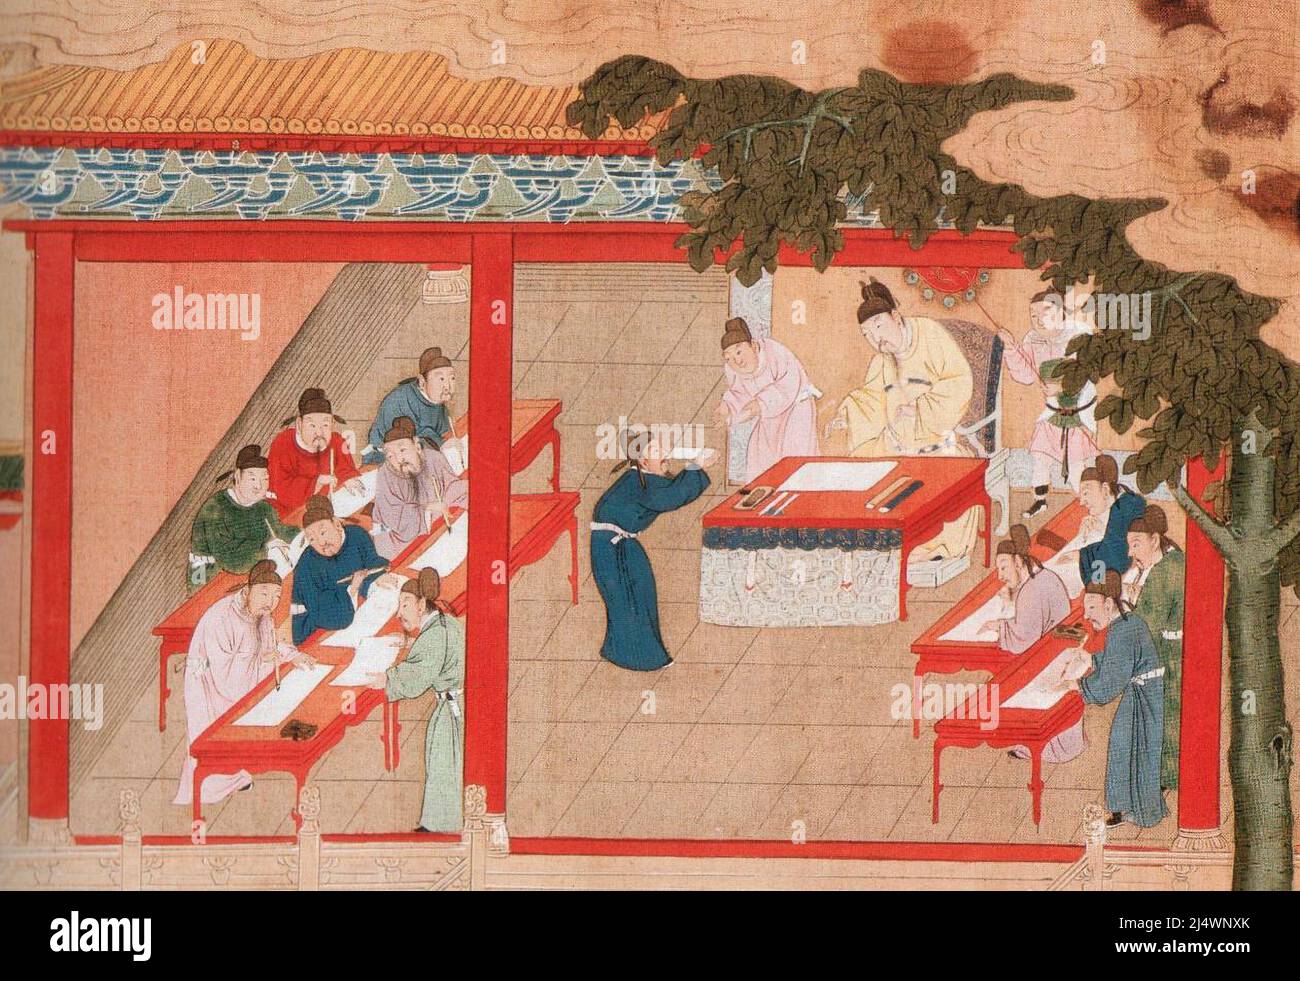 Examen du palais, dans la dynastie Song, peint dans la dynastie Ming. Banque D'Images